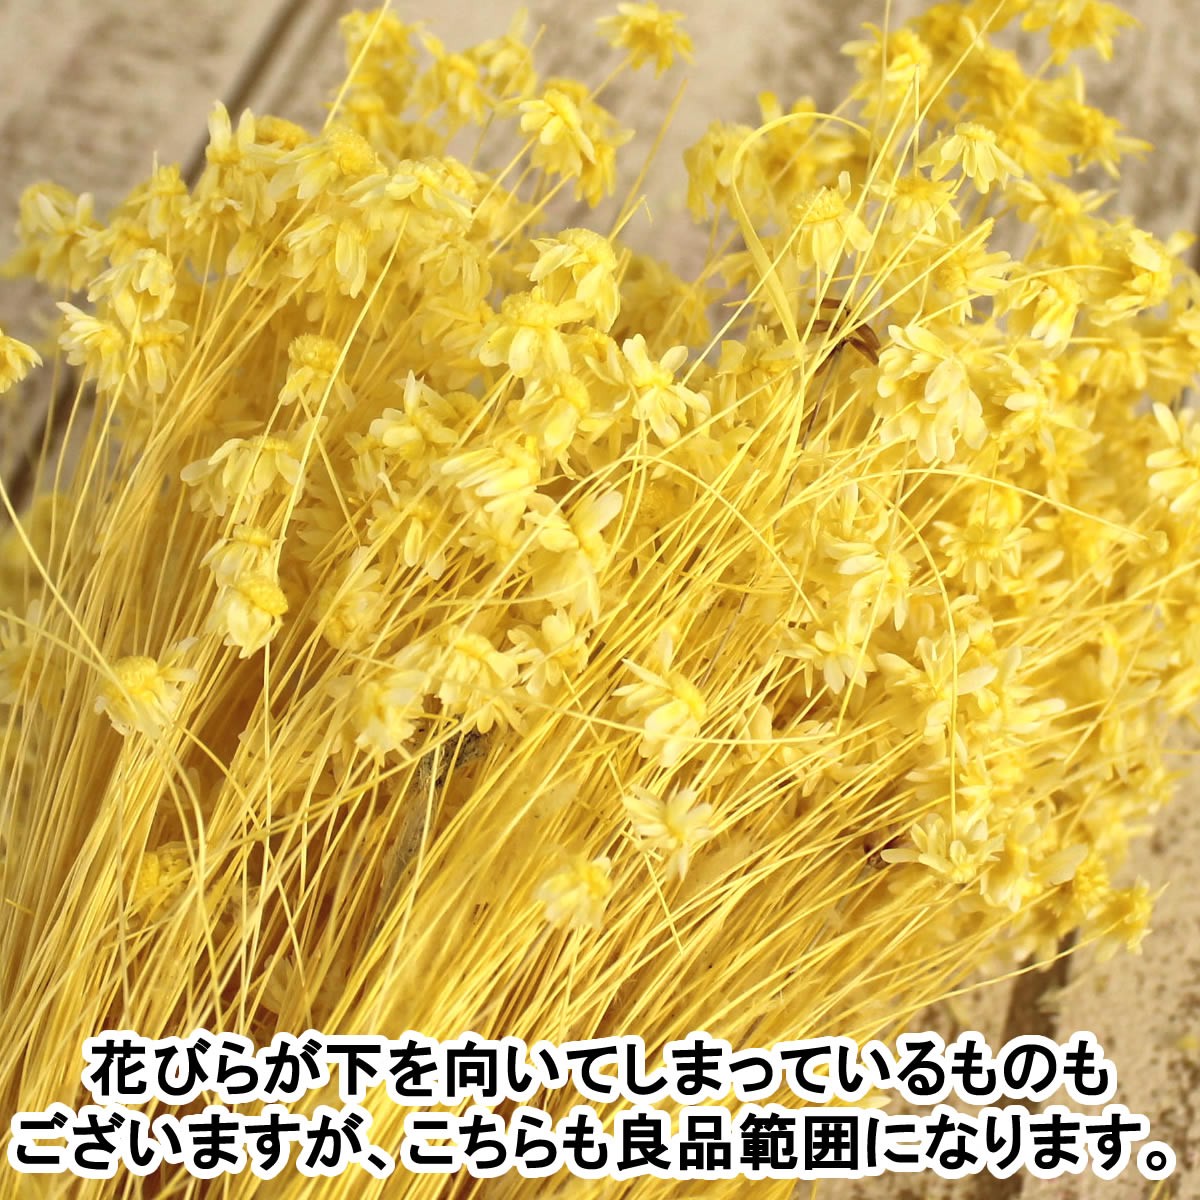  dry large ground agriculture . Star flower Mini white 12g 30194-011 dry flower material for flower arrangement Star flower 